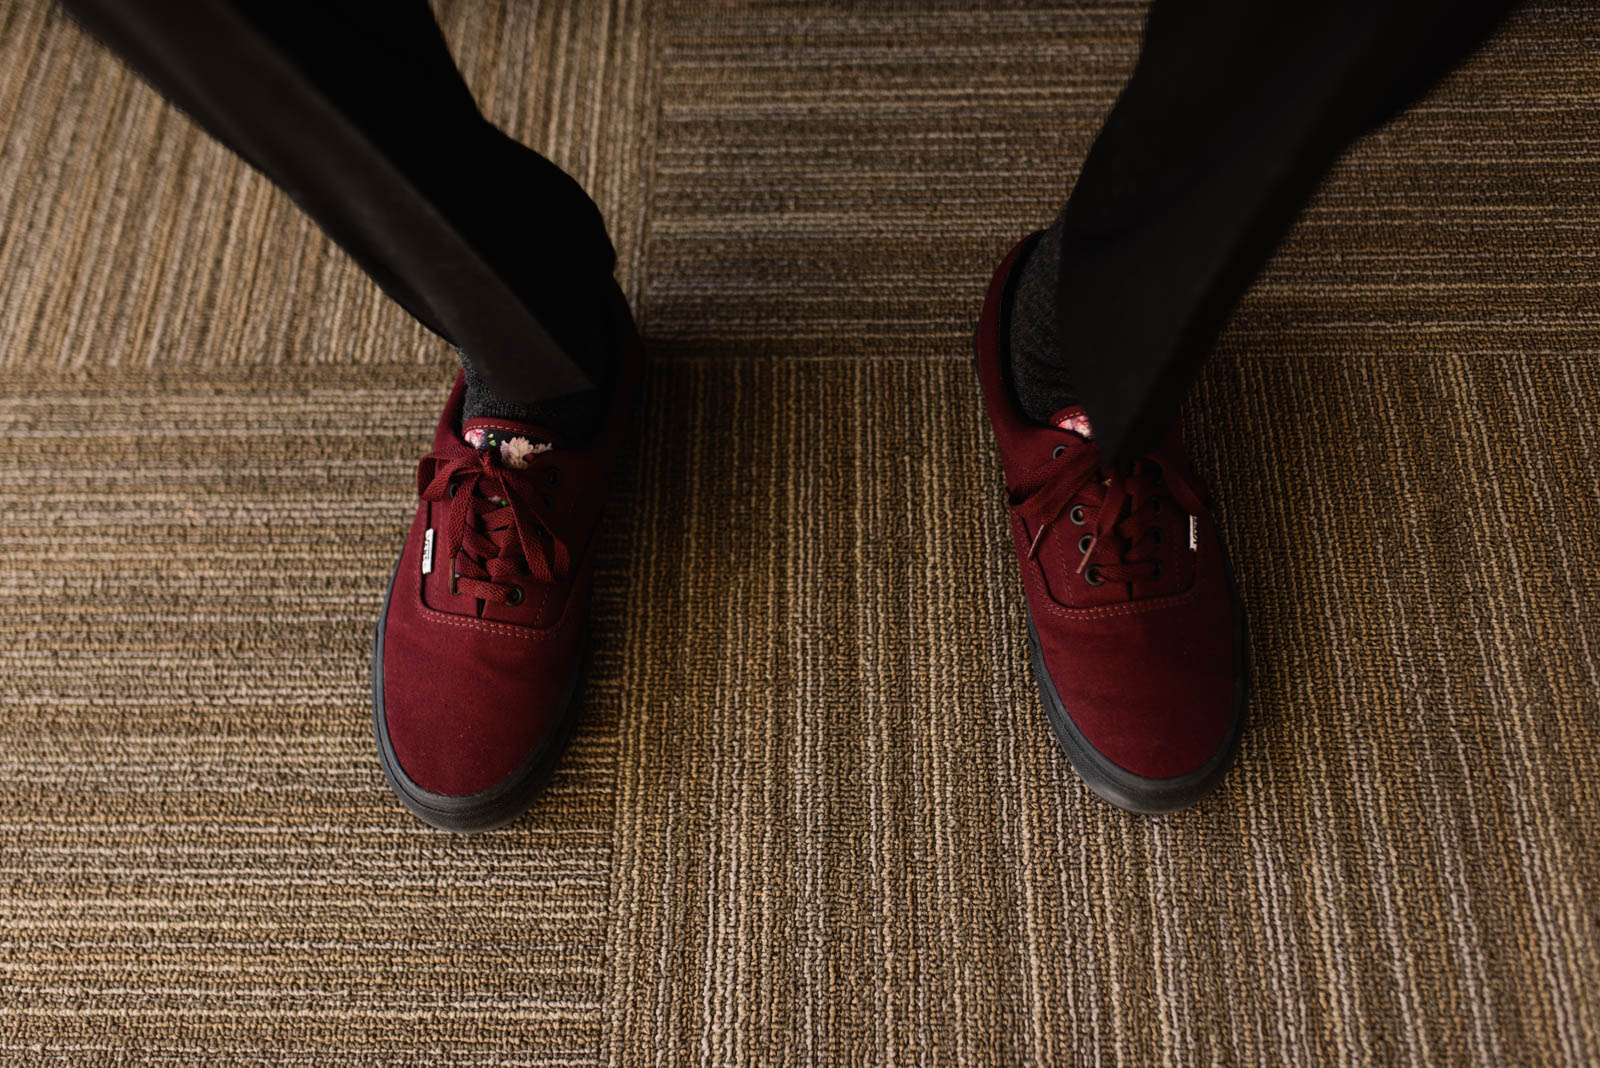 grooms red vans shoes